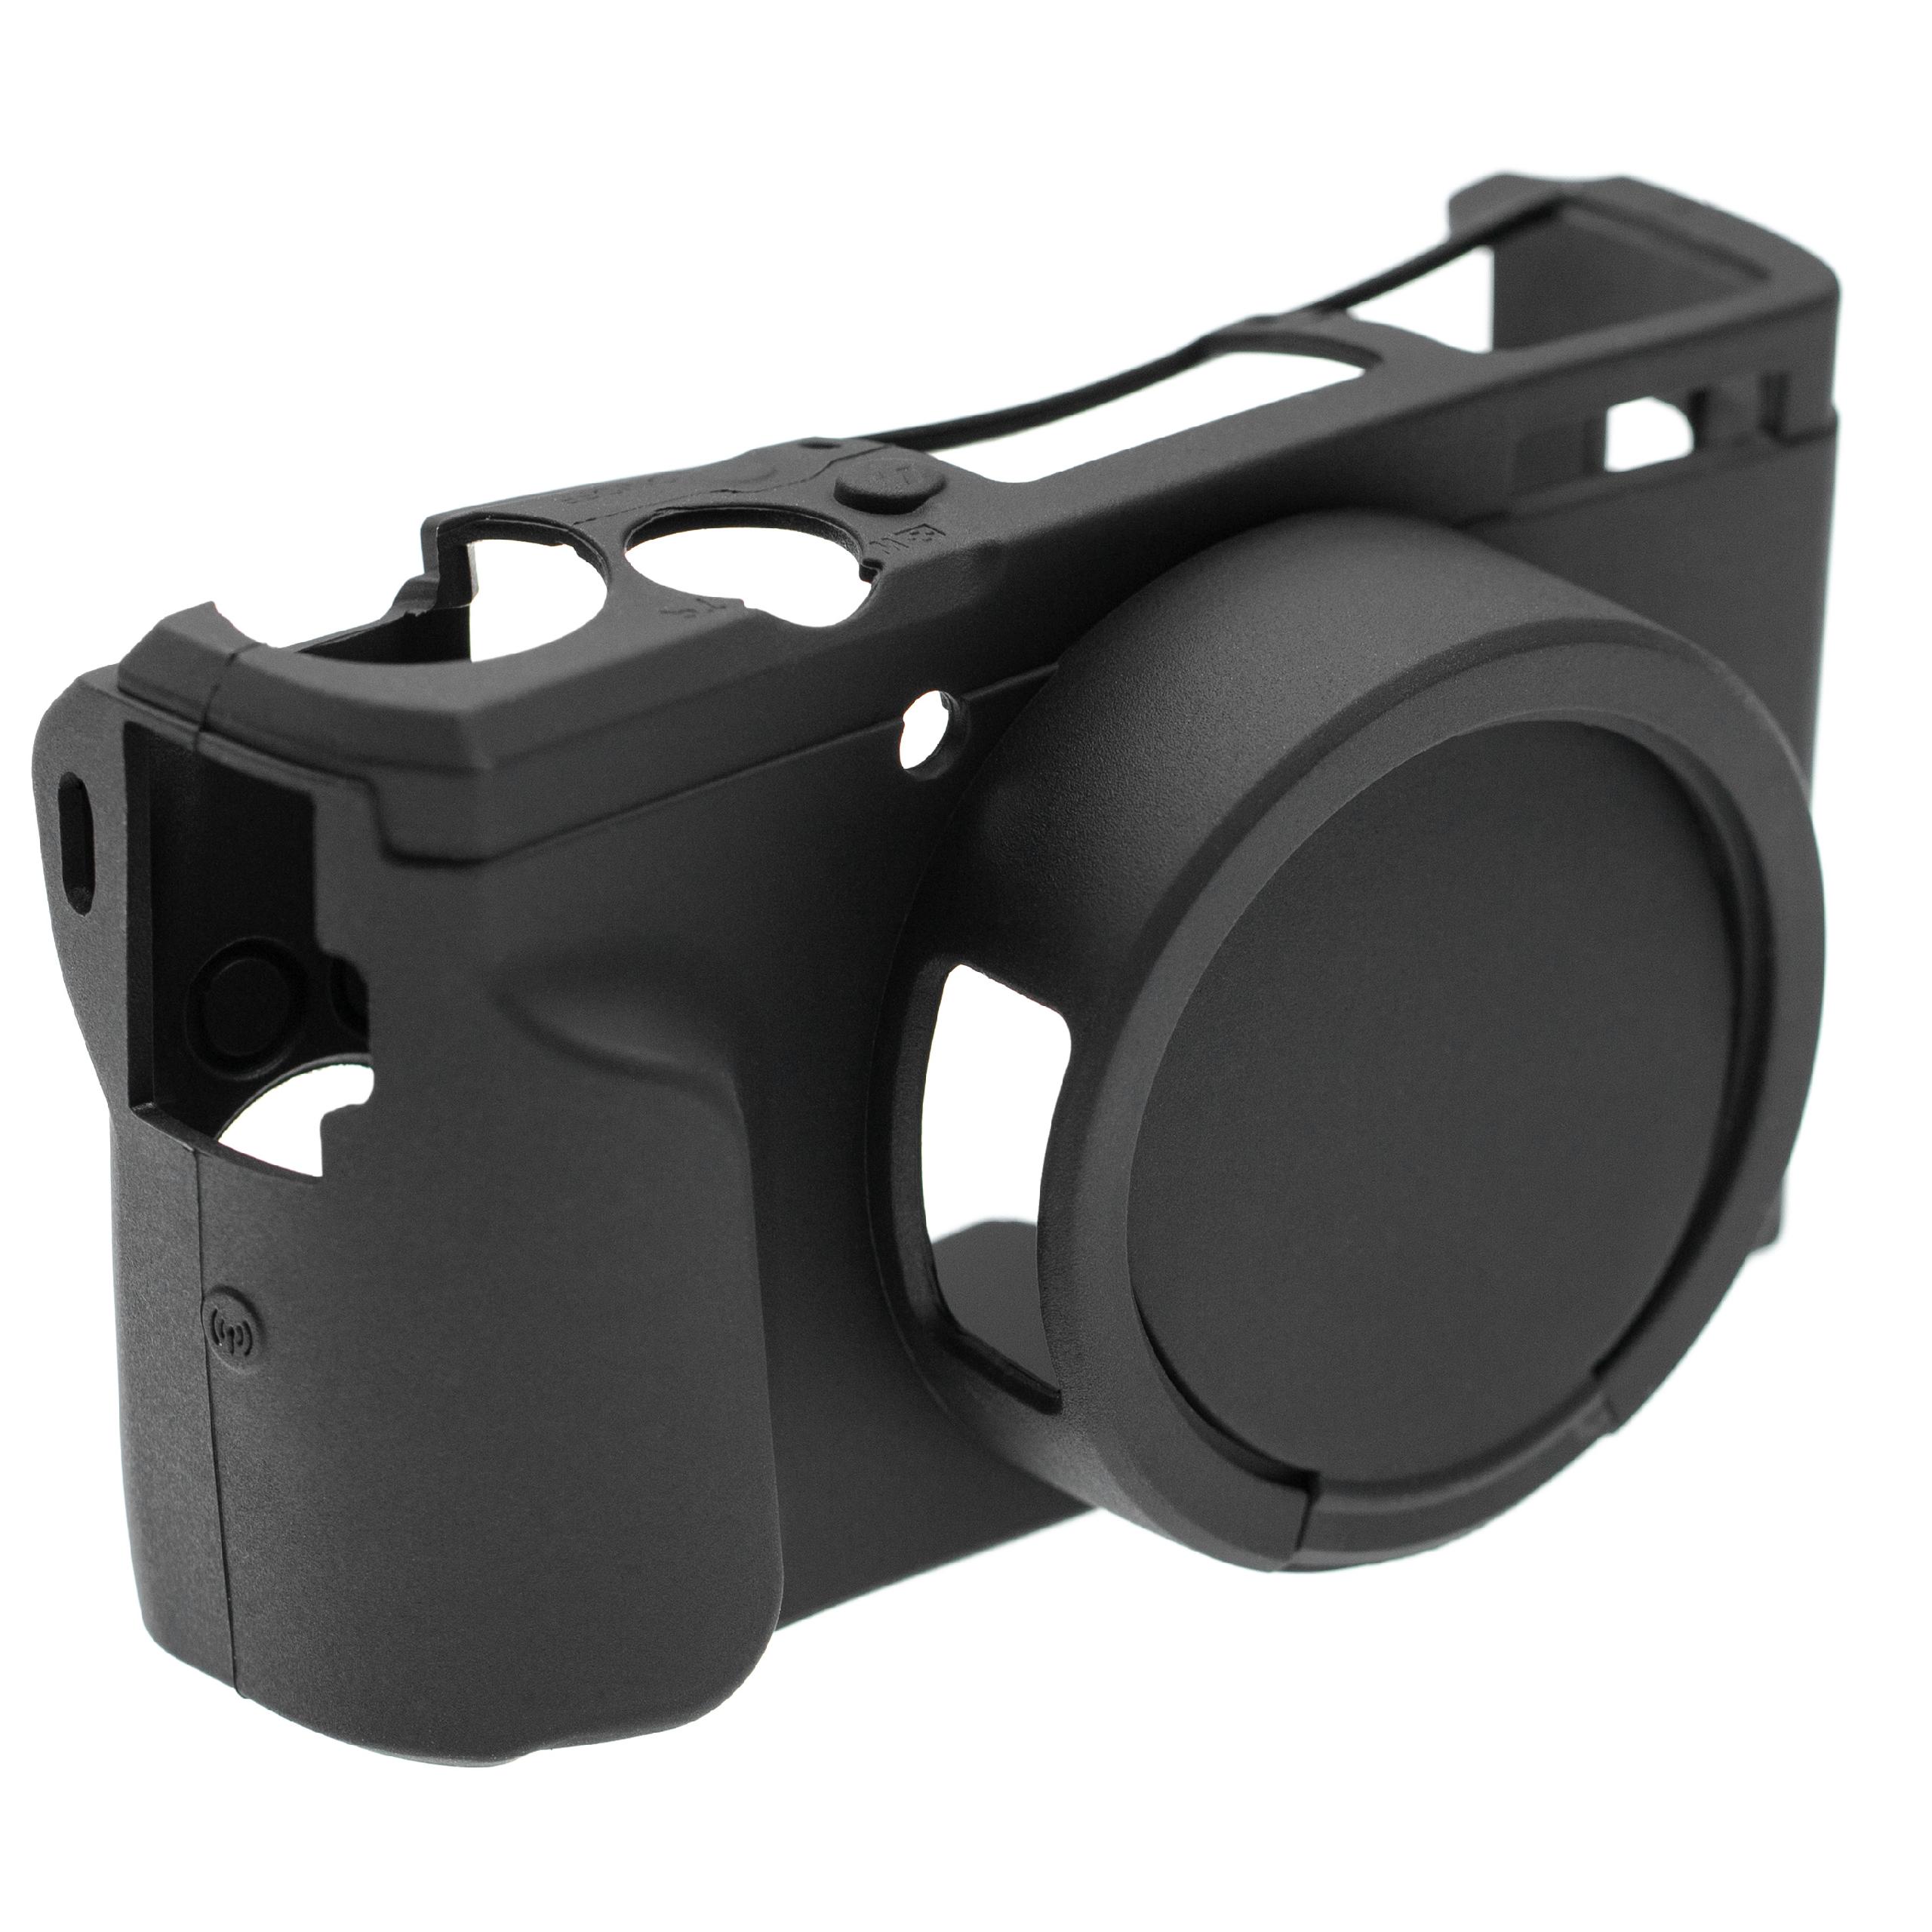 Schutzhülle passend für Canon PowerShot G5X Mark II Kamera - Silikon, Schwarz, Mit Extra-Schutz für Kameralins